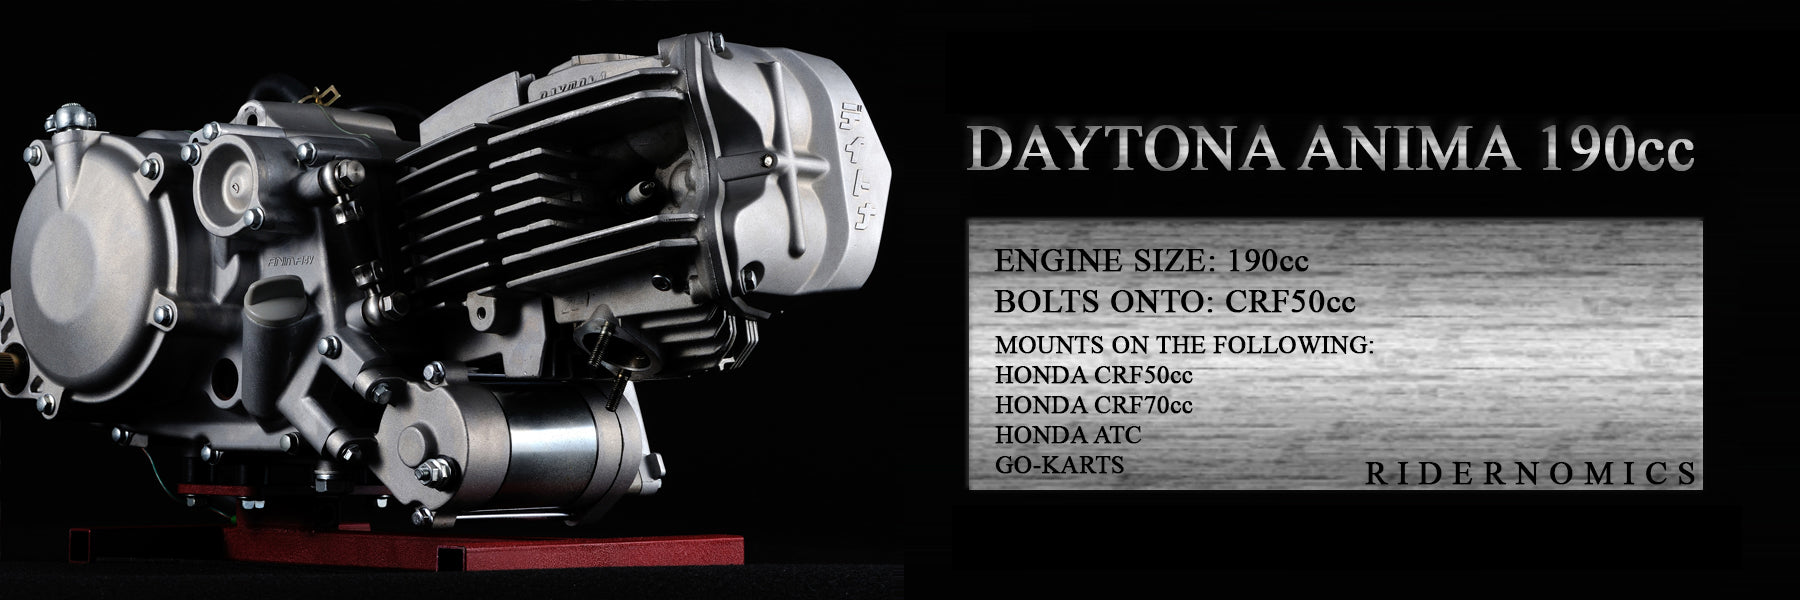 Daytona Anima 190cc engine 